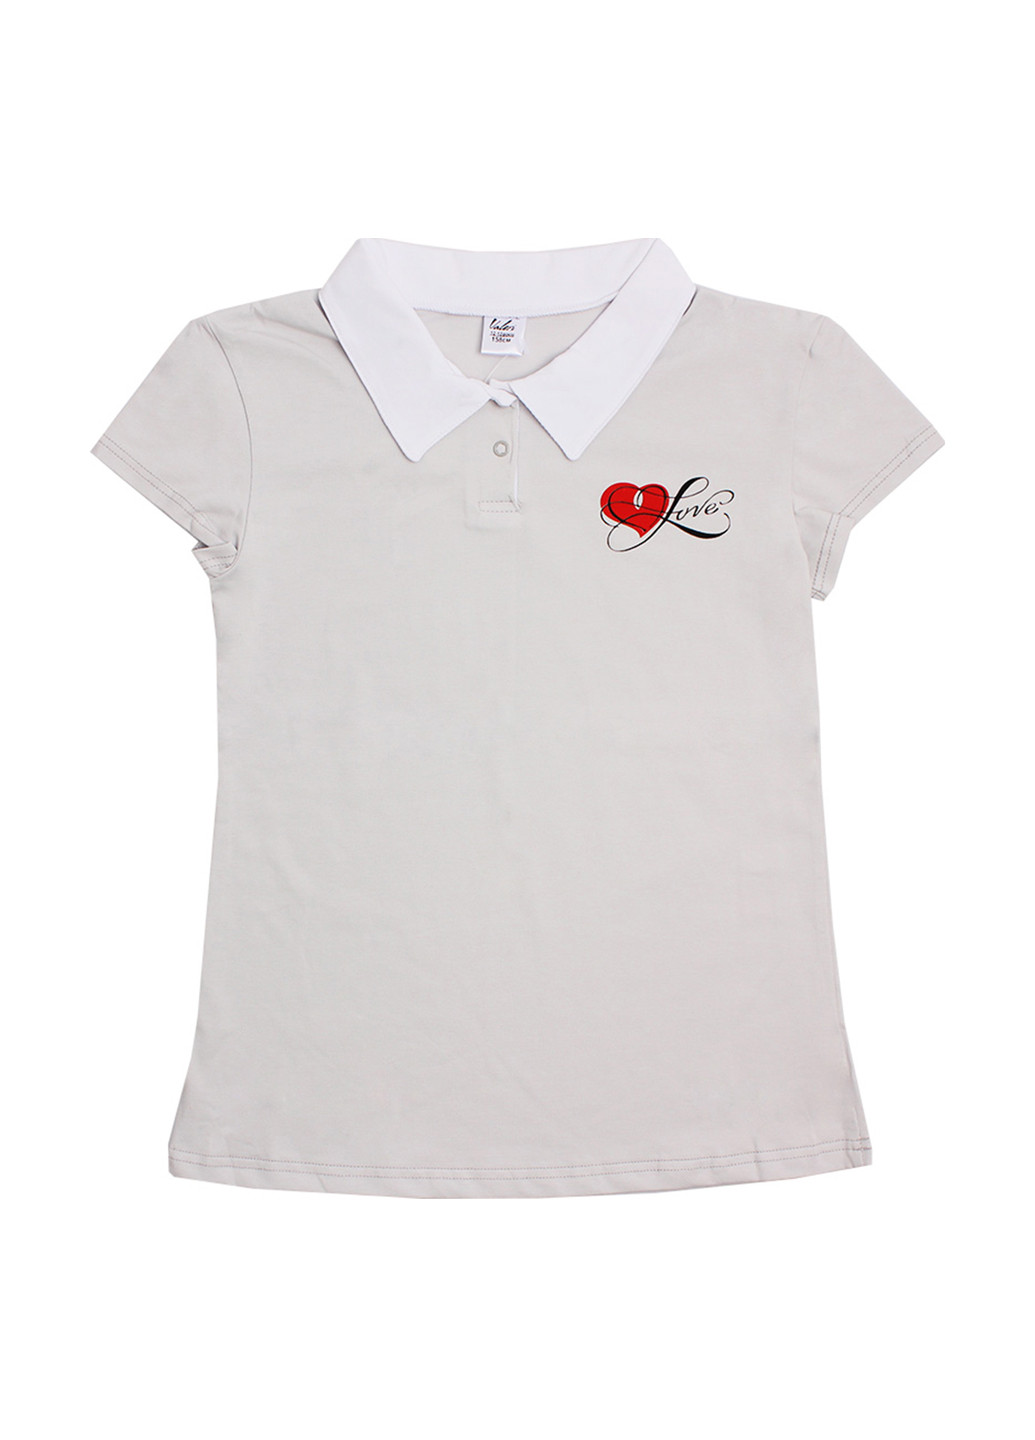 Серая детская футболка-поло для девочки Валери-Текс с рисунком